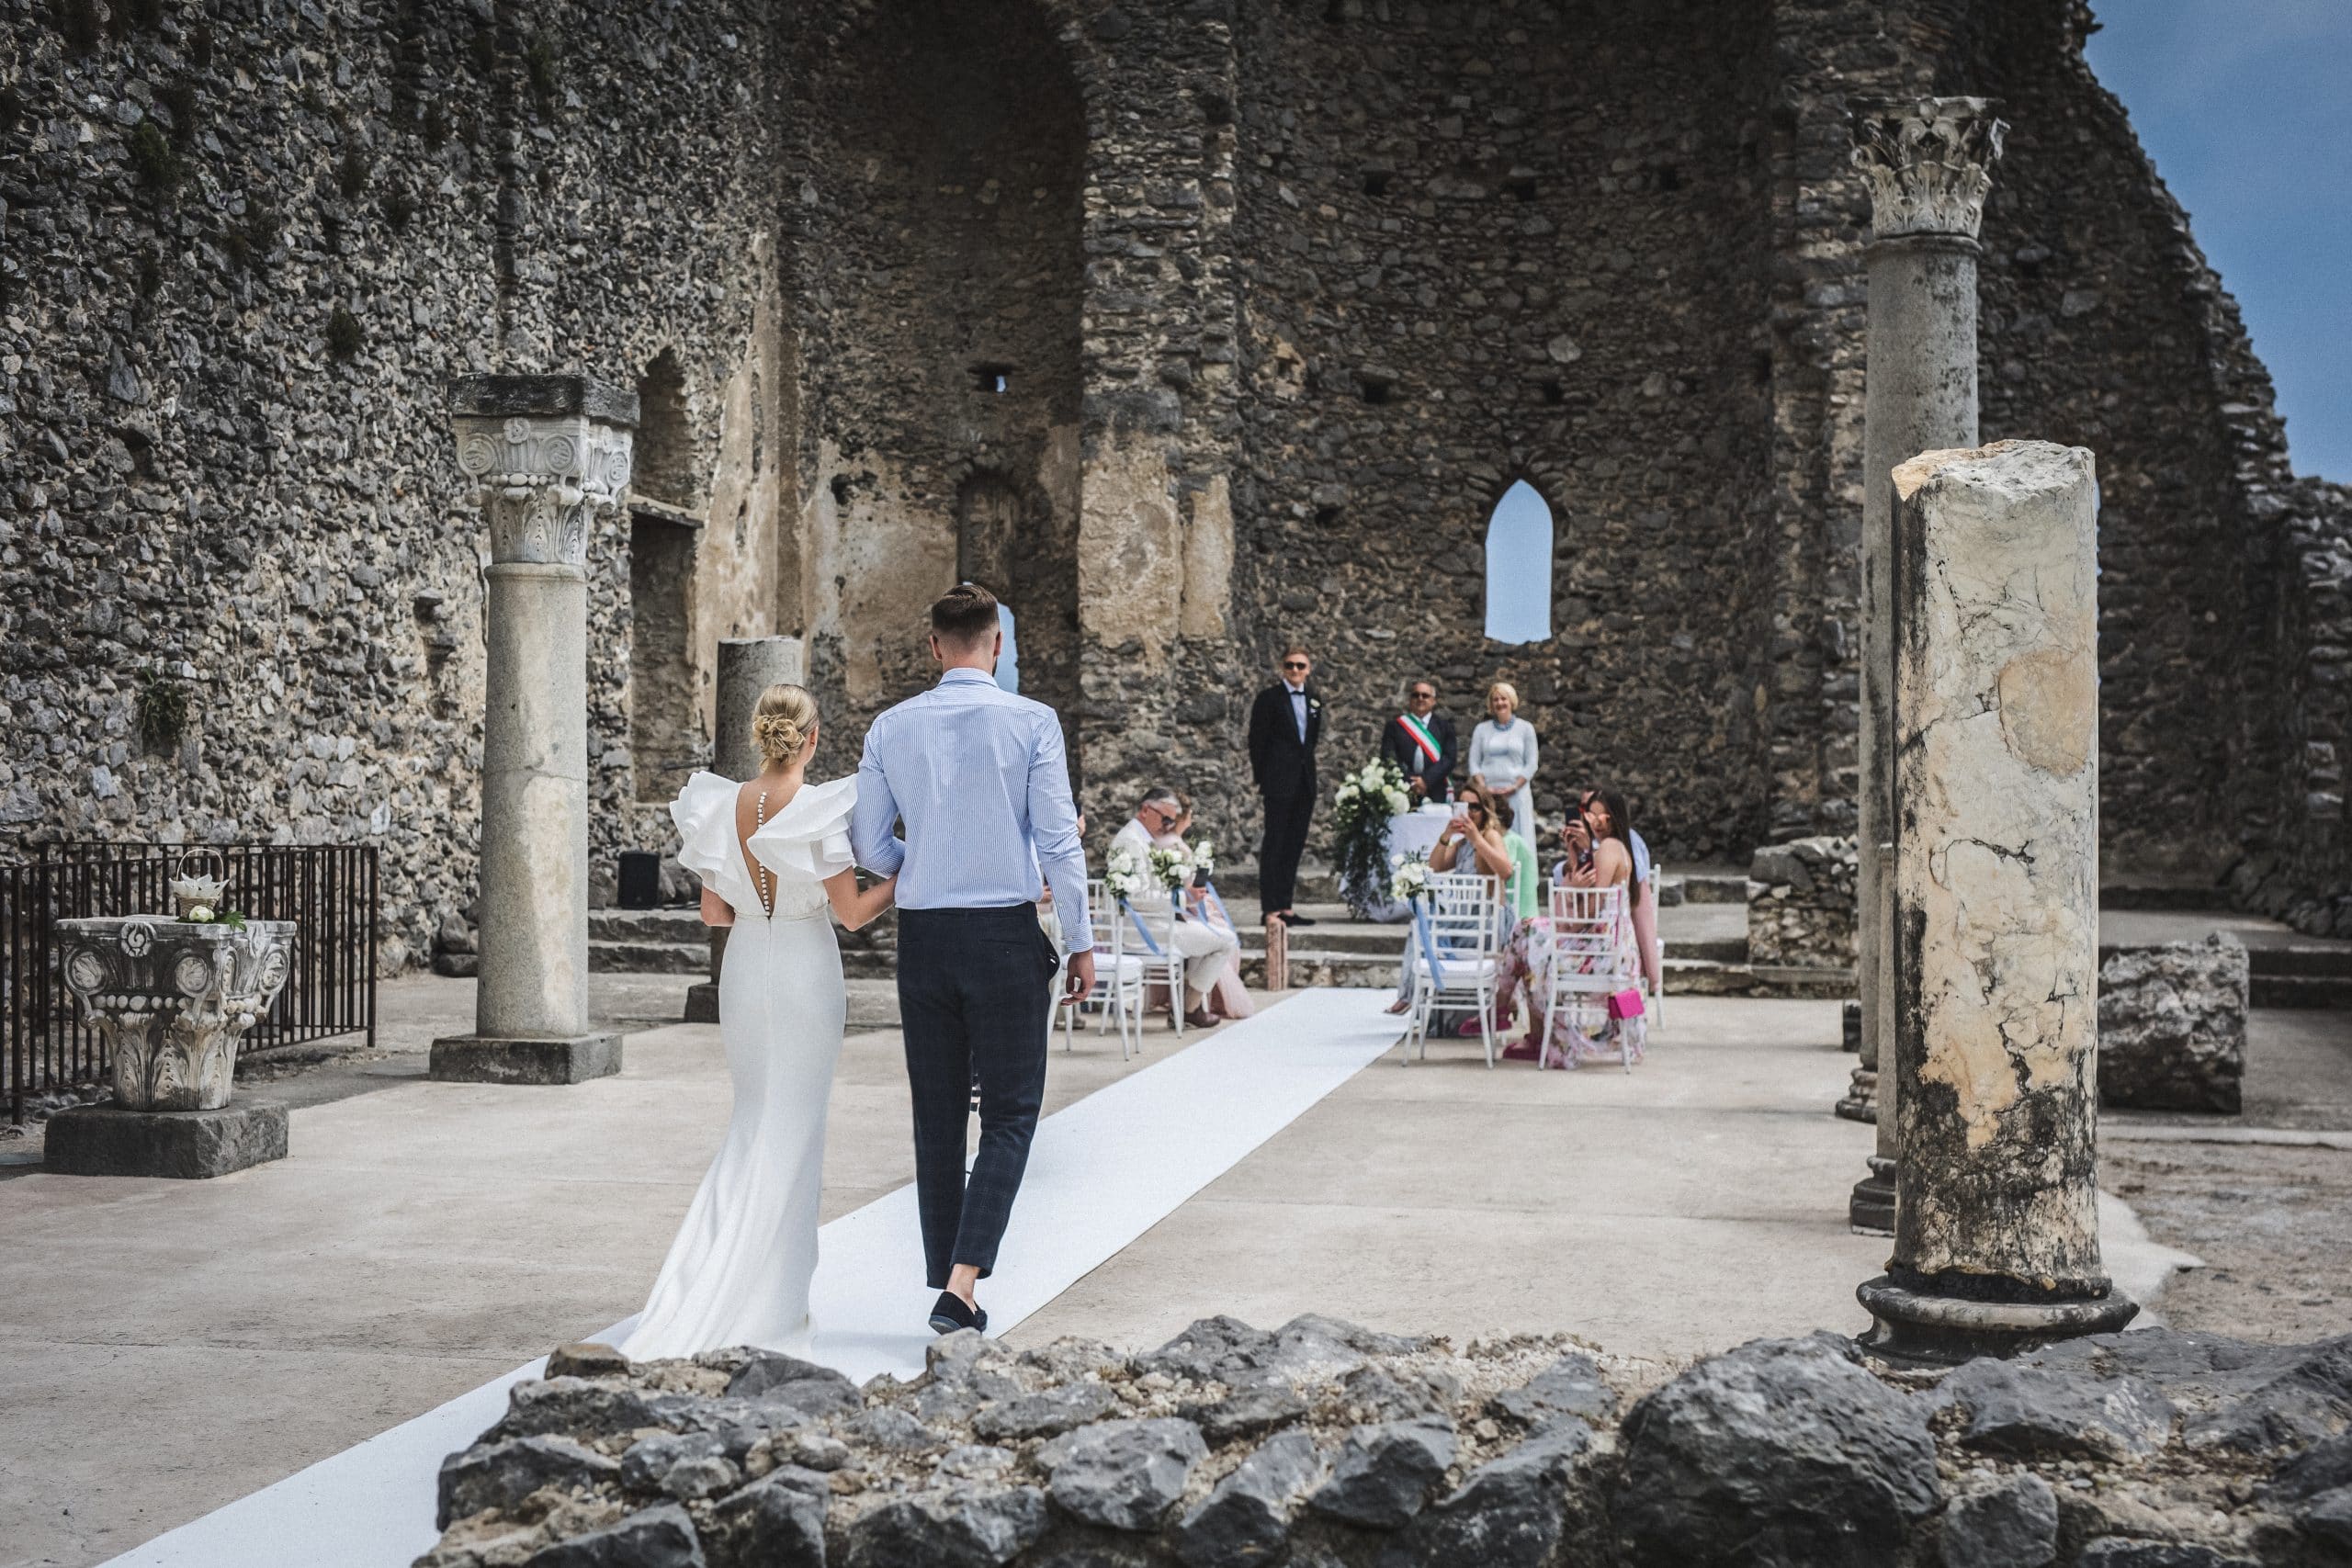 Vilma Wedding & Event Planner _ vestuvės Italijoje _ santuoka su artimaisiais užsienyje _ pietų Italija _ vestuvių planuotoja organizatorė kooridnatorė _ Vilma Rapšaitė